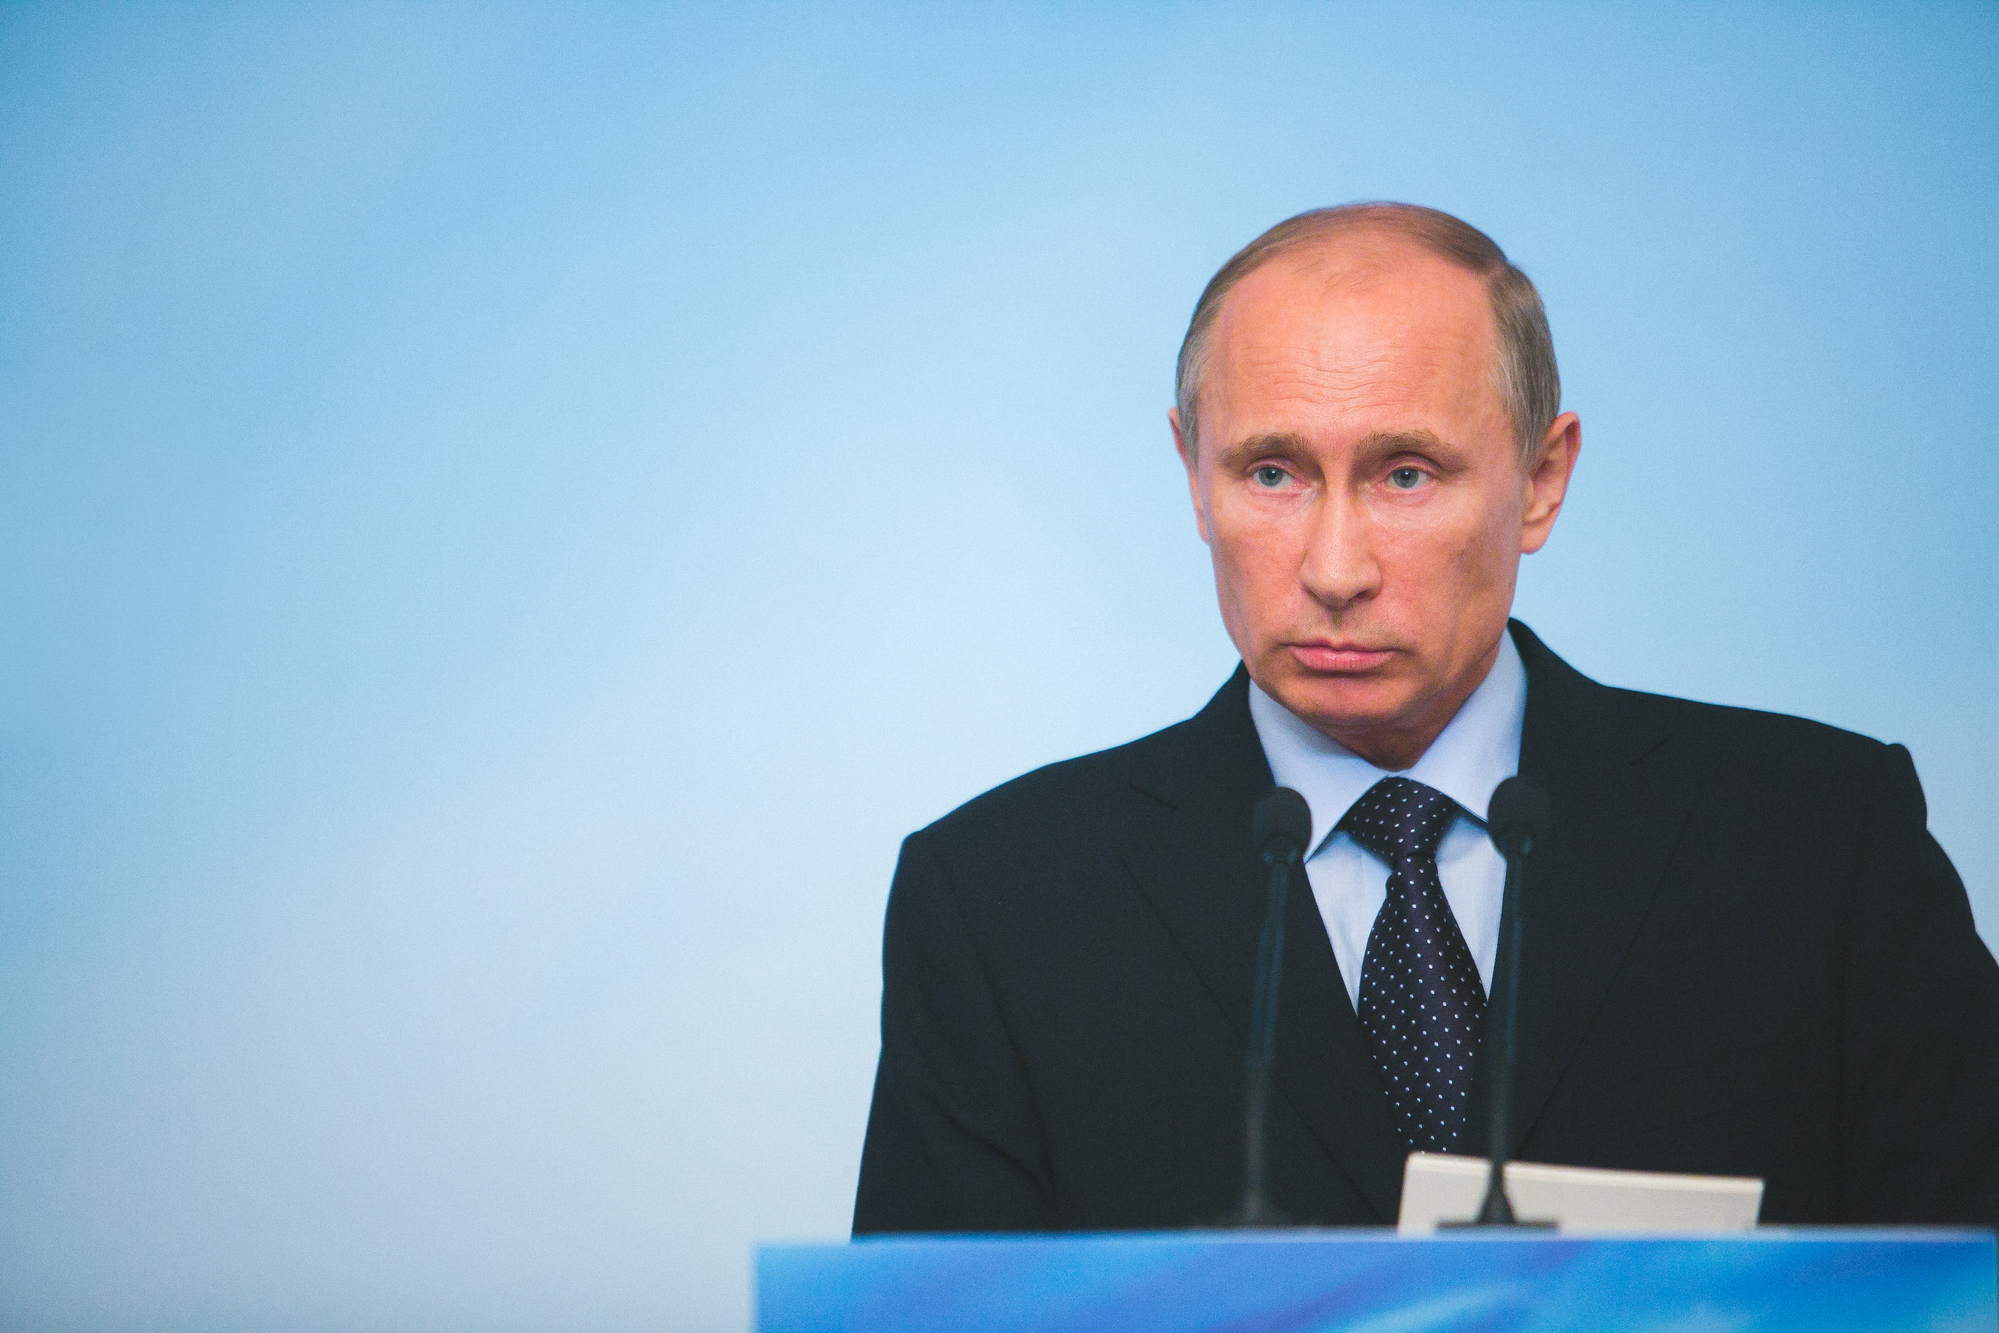 Vladimir Putin, foto: Depositphotos/220 Potorochin